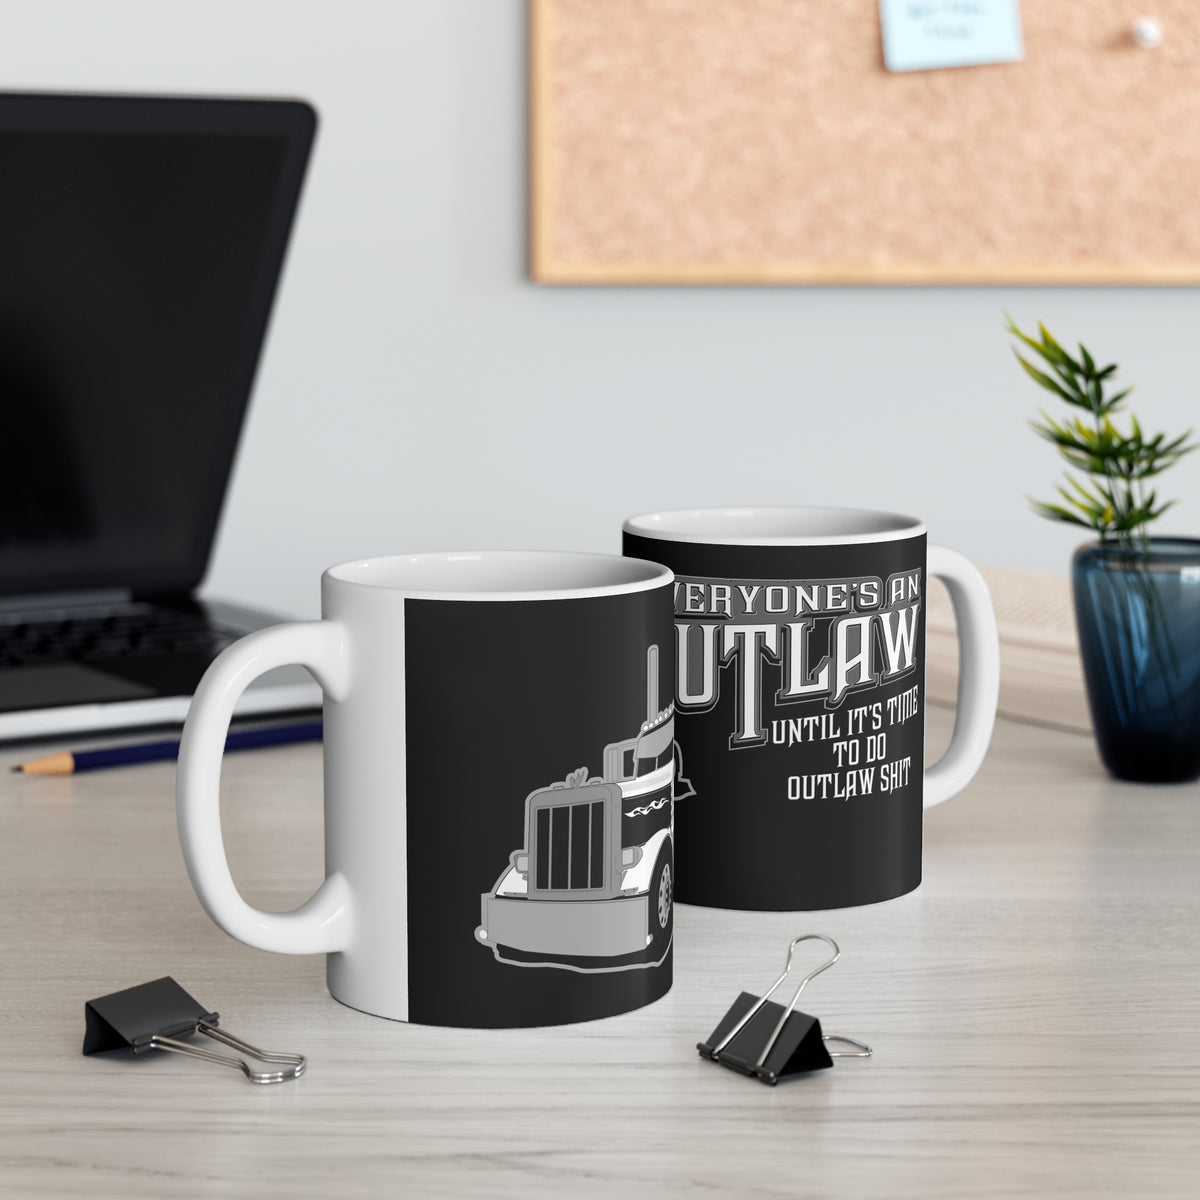 Everyone's An Outlaw - Peterbilt - Ceramic Mug 11oz